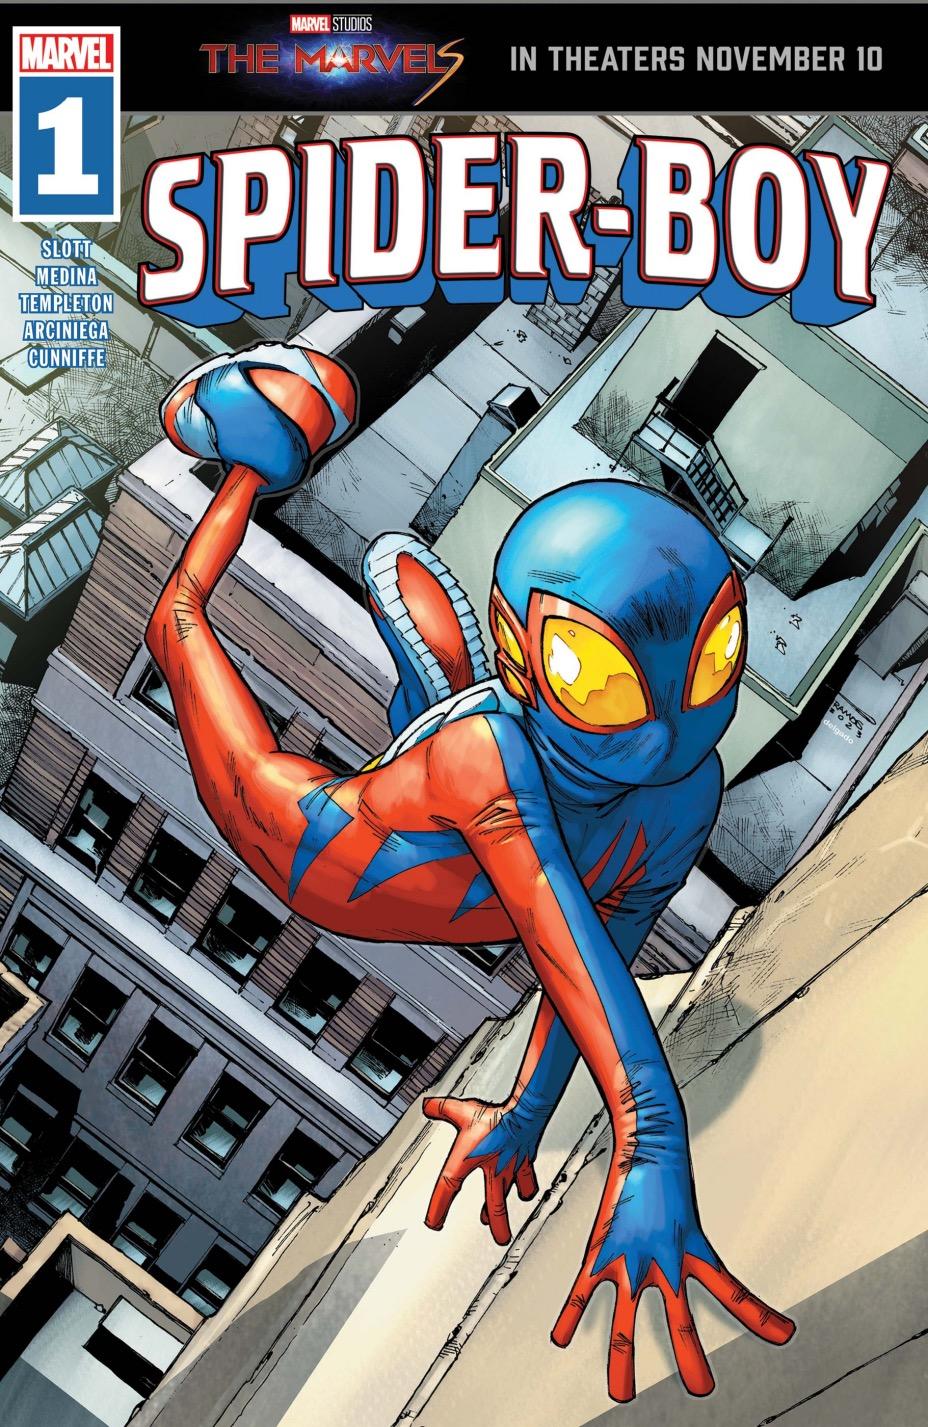 spider-boy-issue-1.jpg